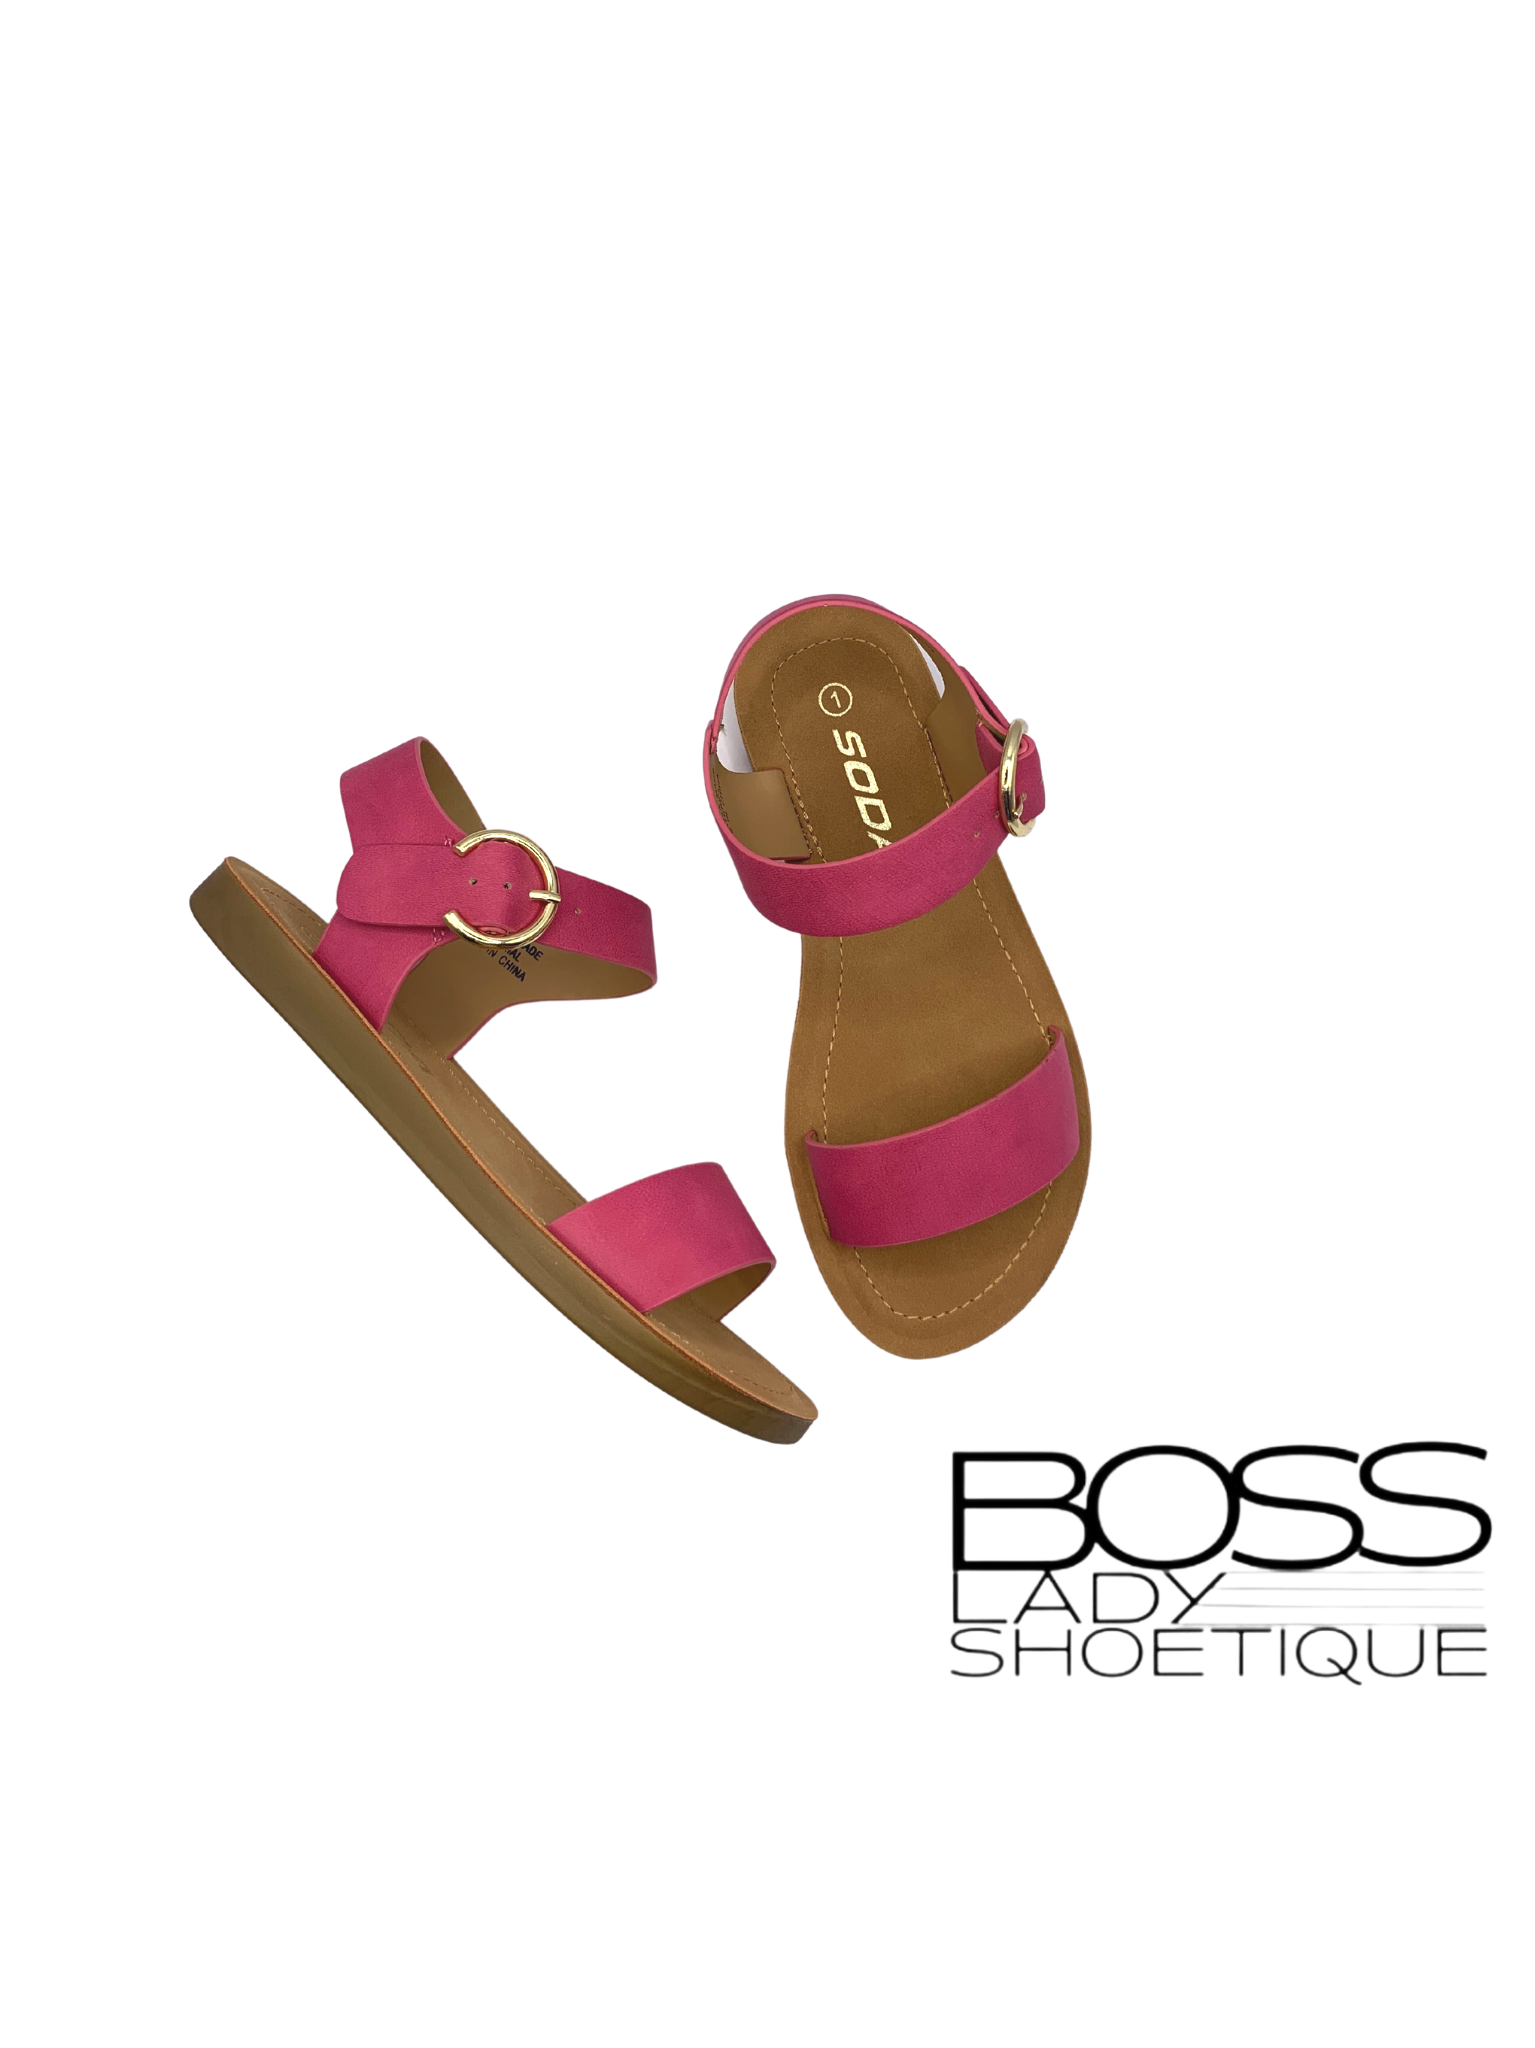 Compel Sandals- Kids - Boss Lady Shoetique 